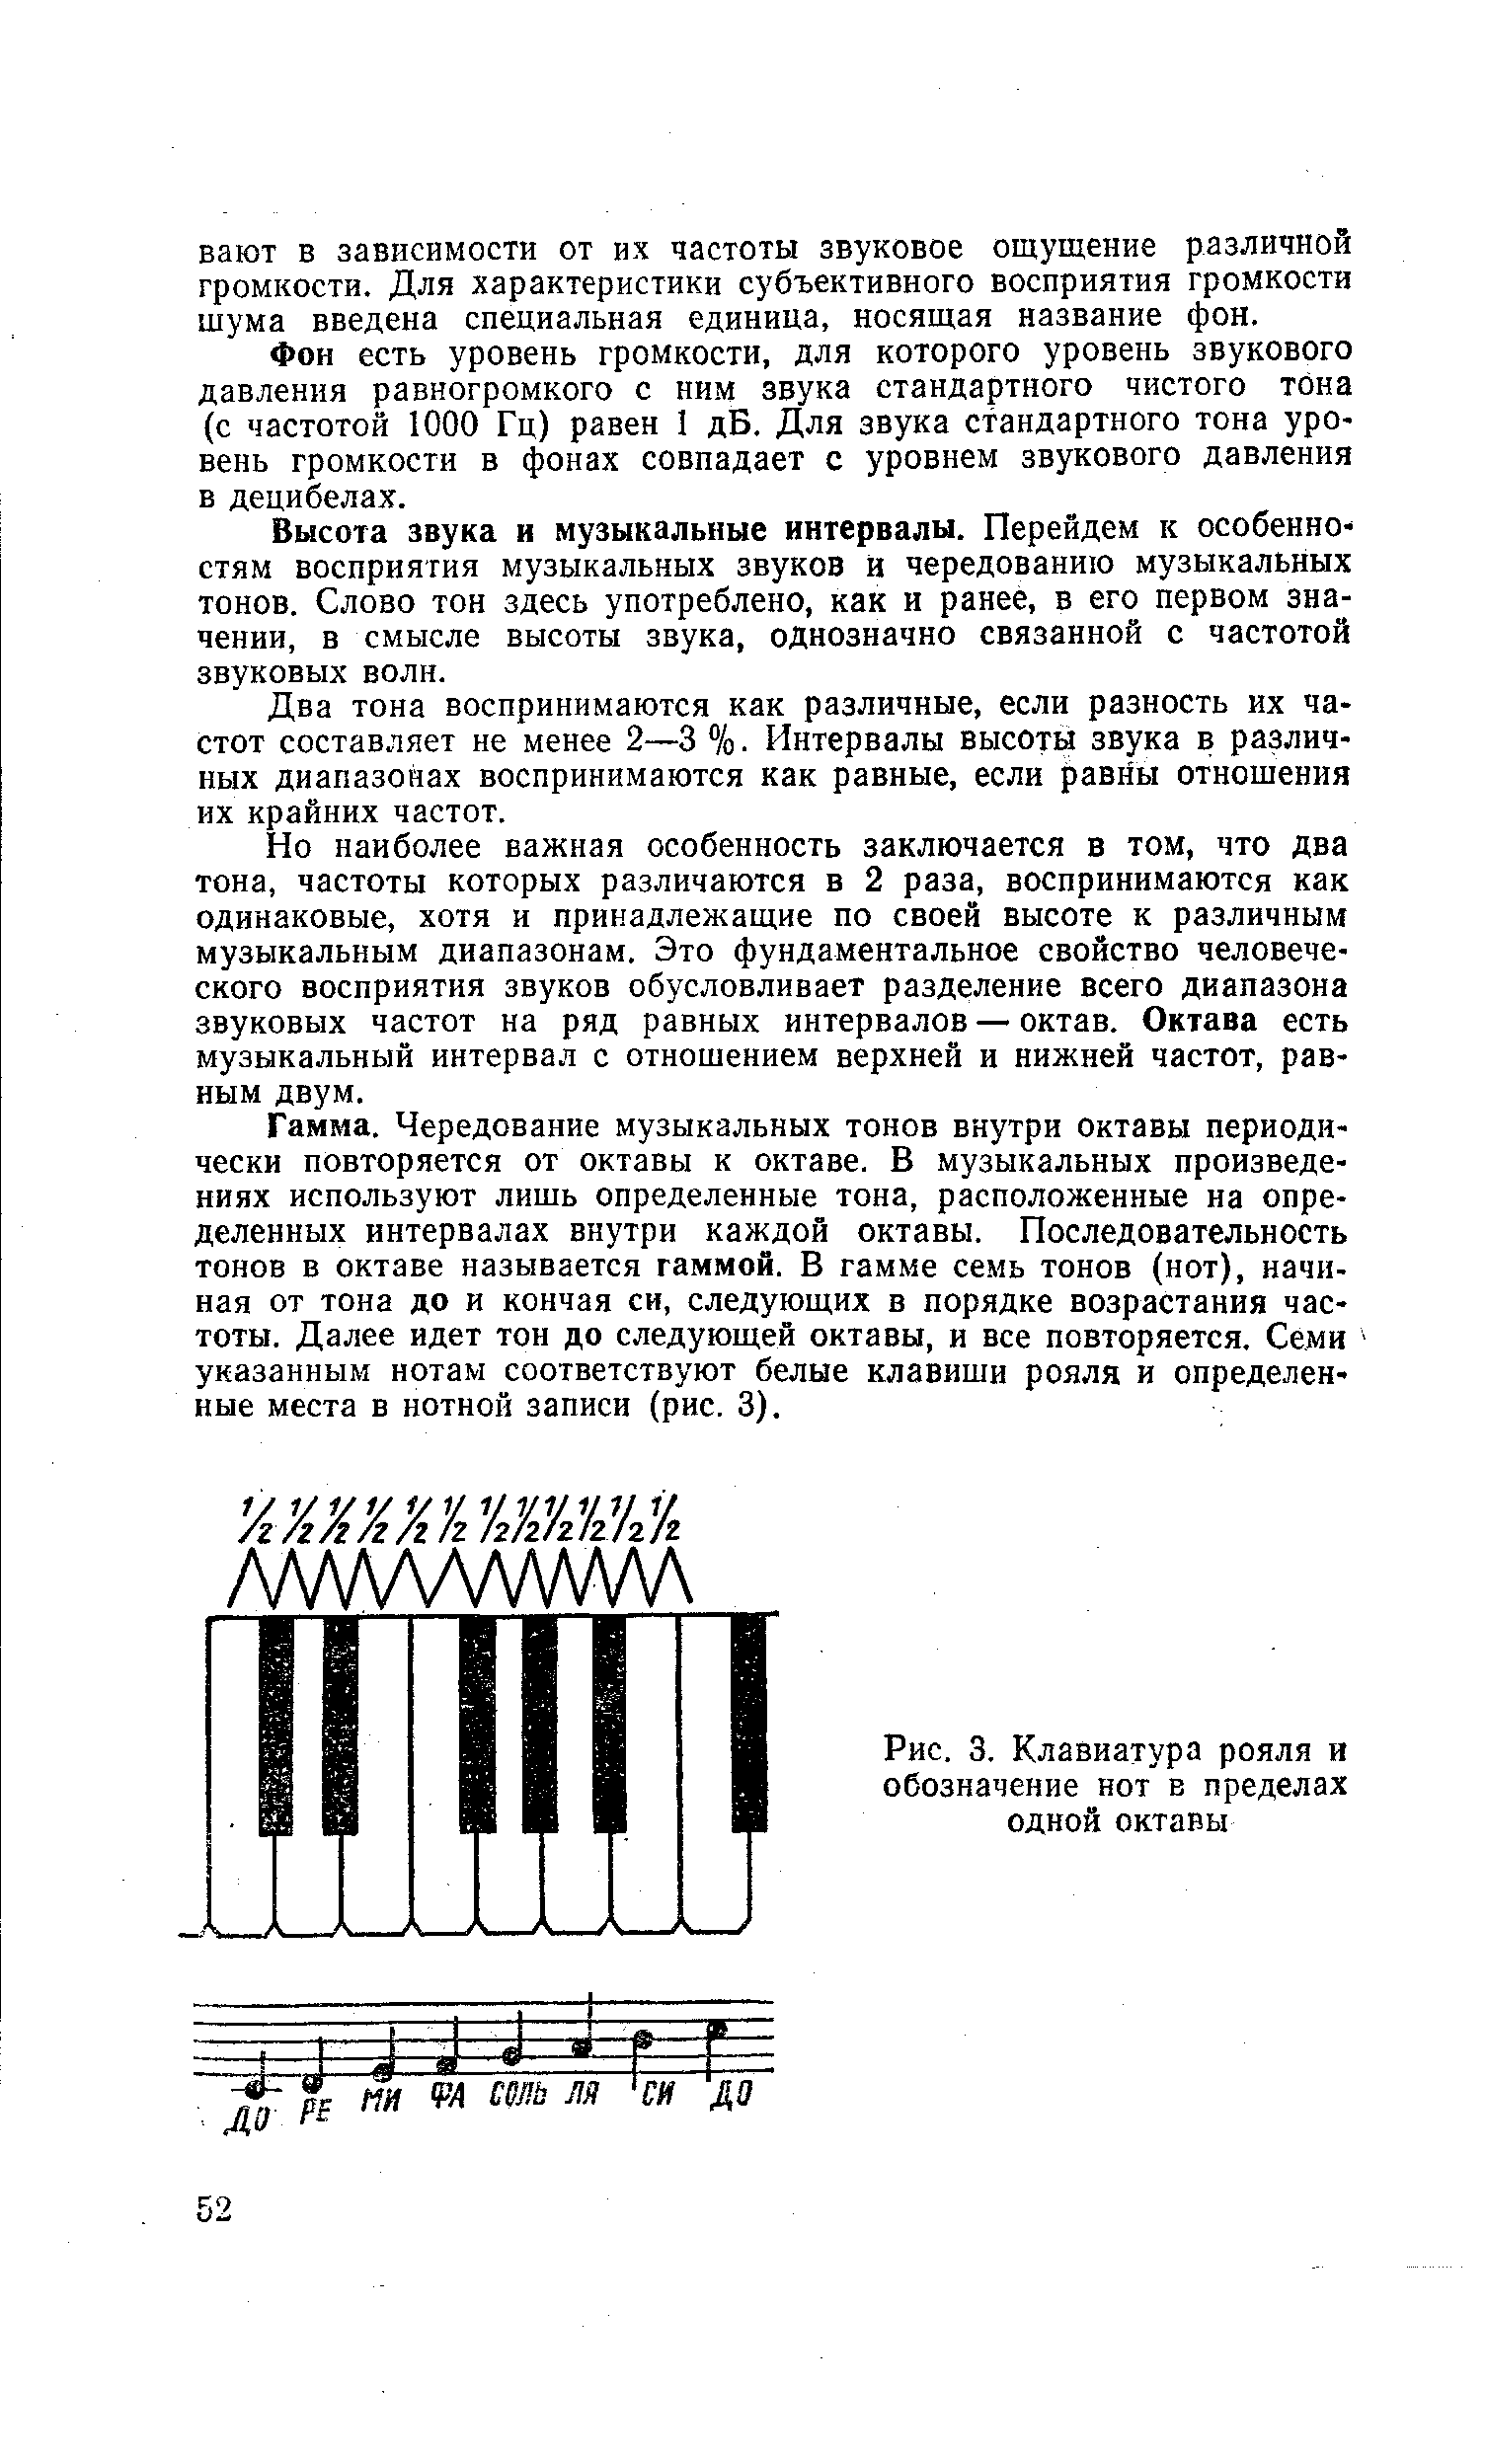 Рис. 3. Клавиатура рояля и обозначение нот в пределах одной октавы
